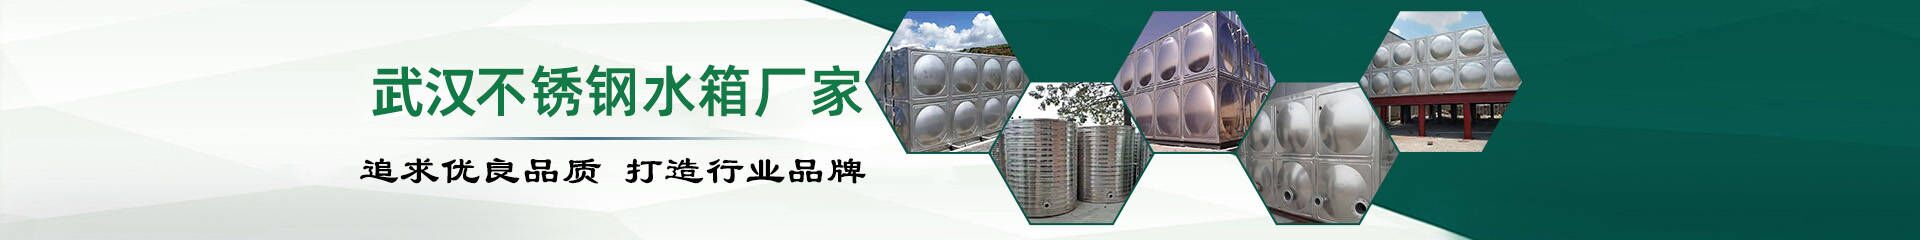 三江航天_合作伙伴_武汉不锈钢水箱厂家联系方式